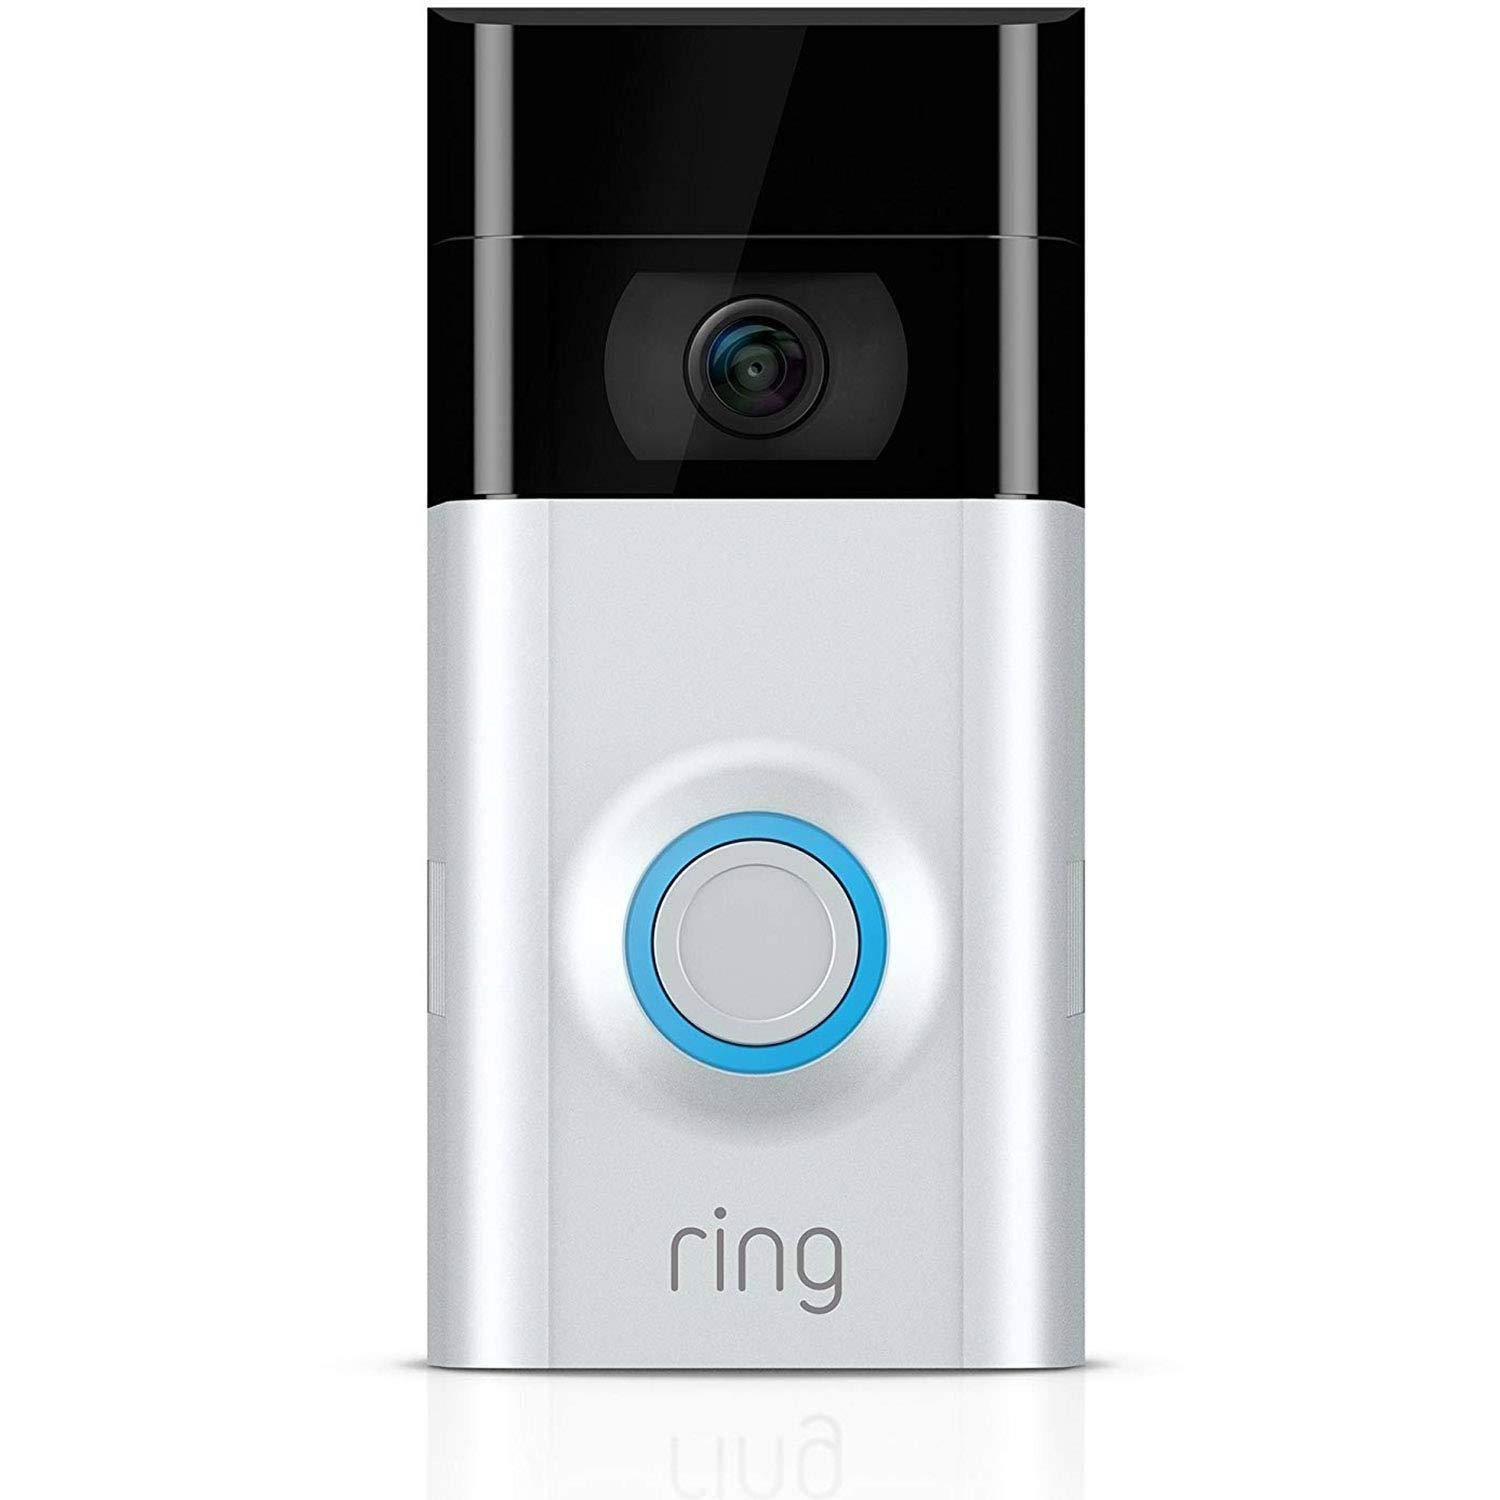 DigitalHome Smart WiFi Video Doorbell 